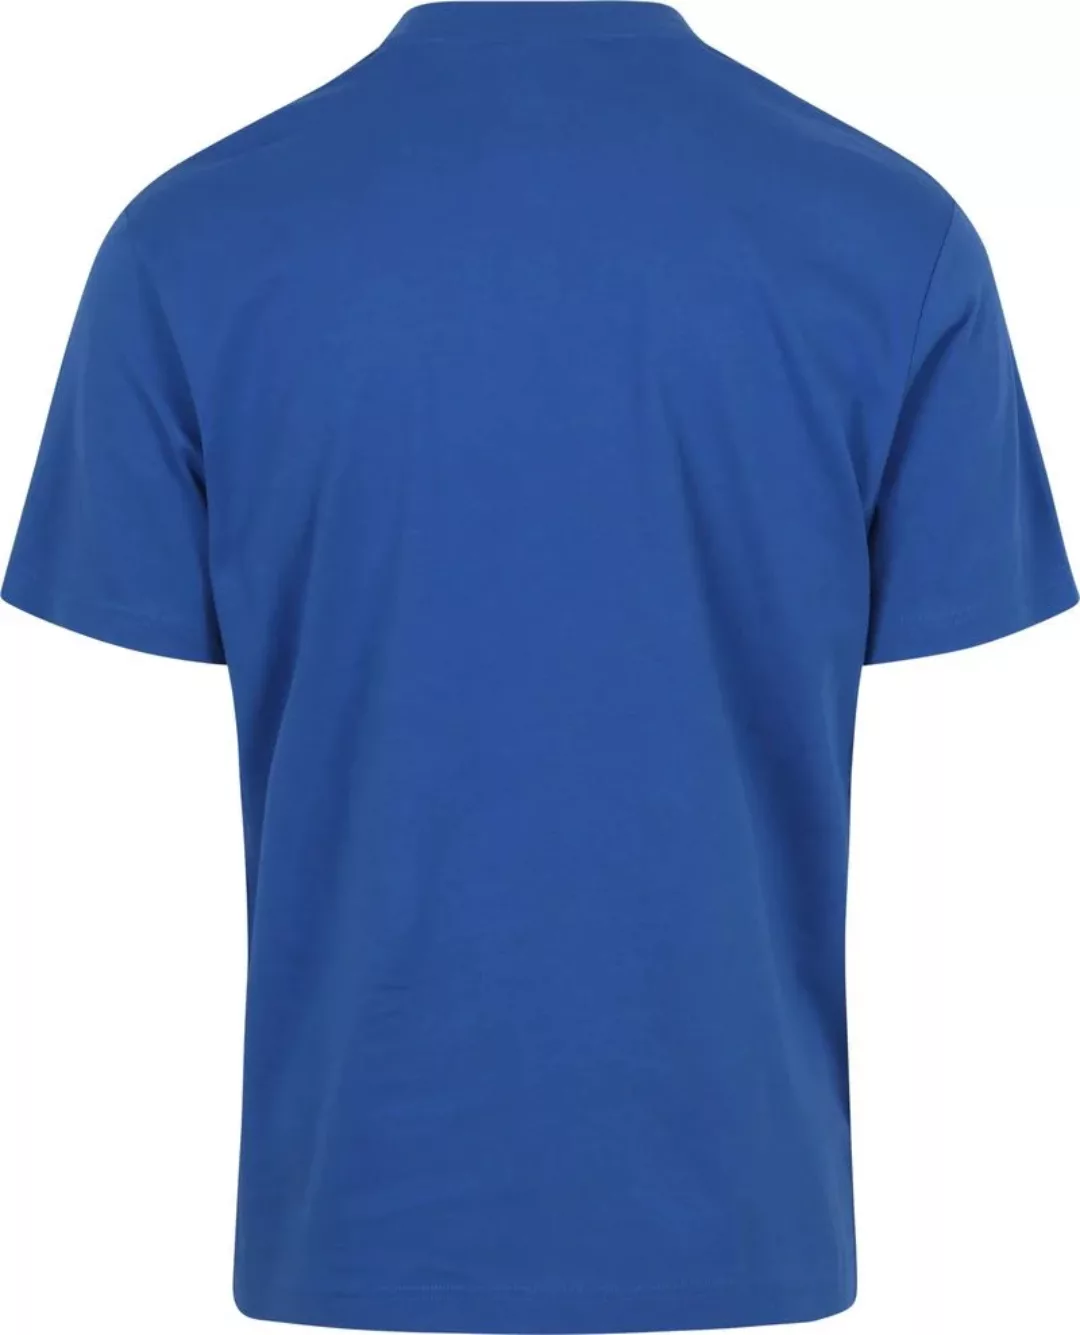 Lacoste T-Shirt Kobaltblau - Größe XXL günstig online kaufen